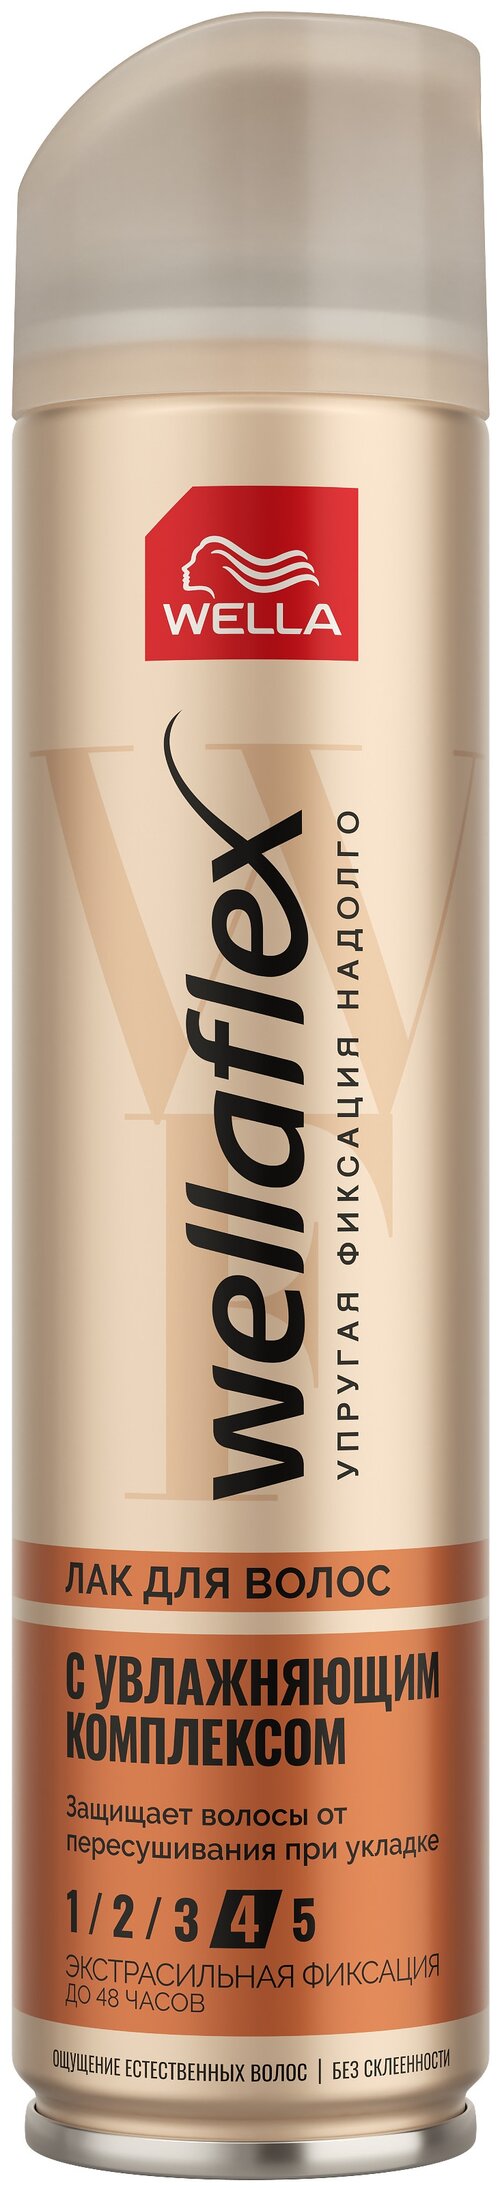 Wella Лак для волос Wellaflex Увлажнение, экстрасильная фиксация, 250 г, 250 мл